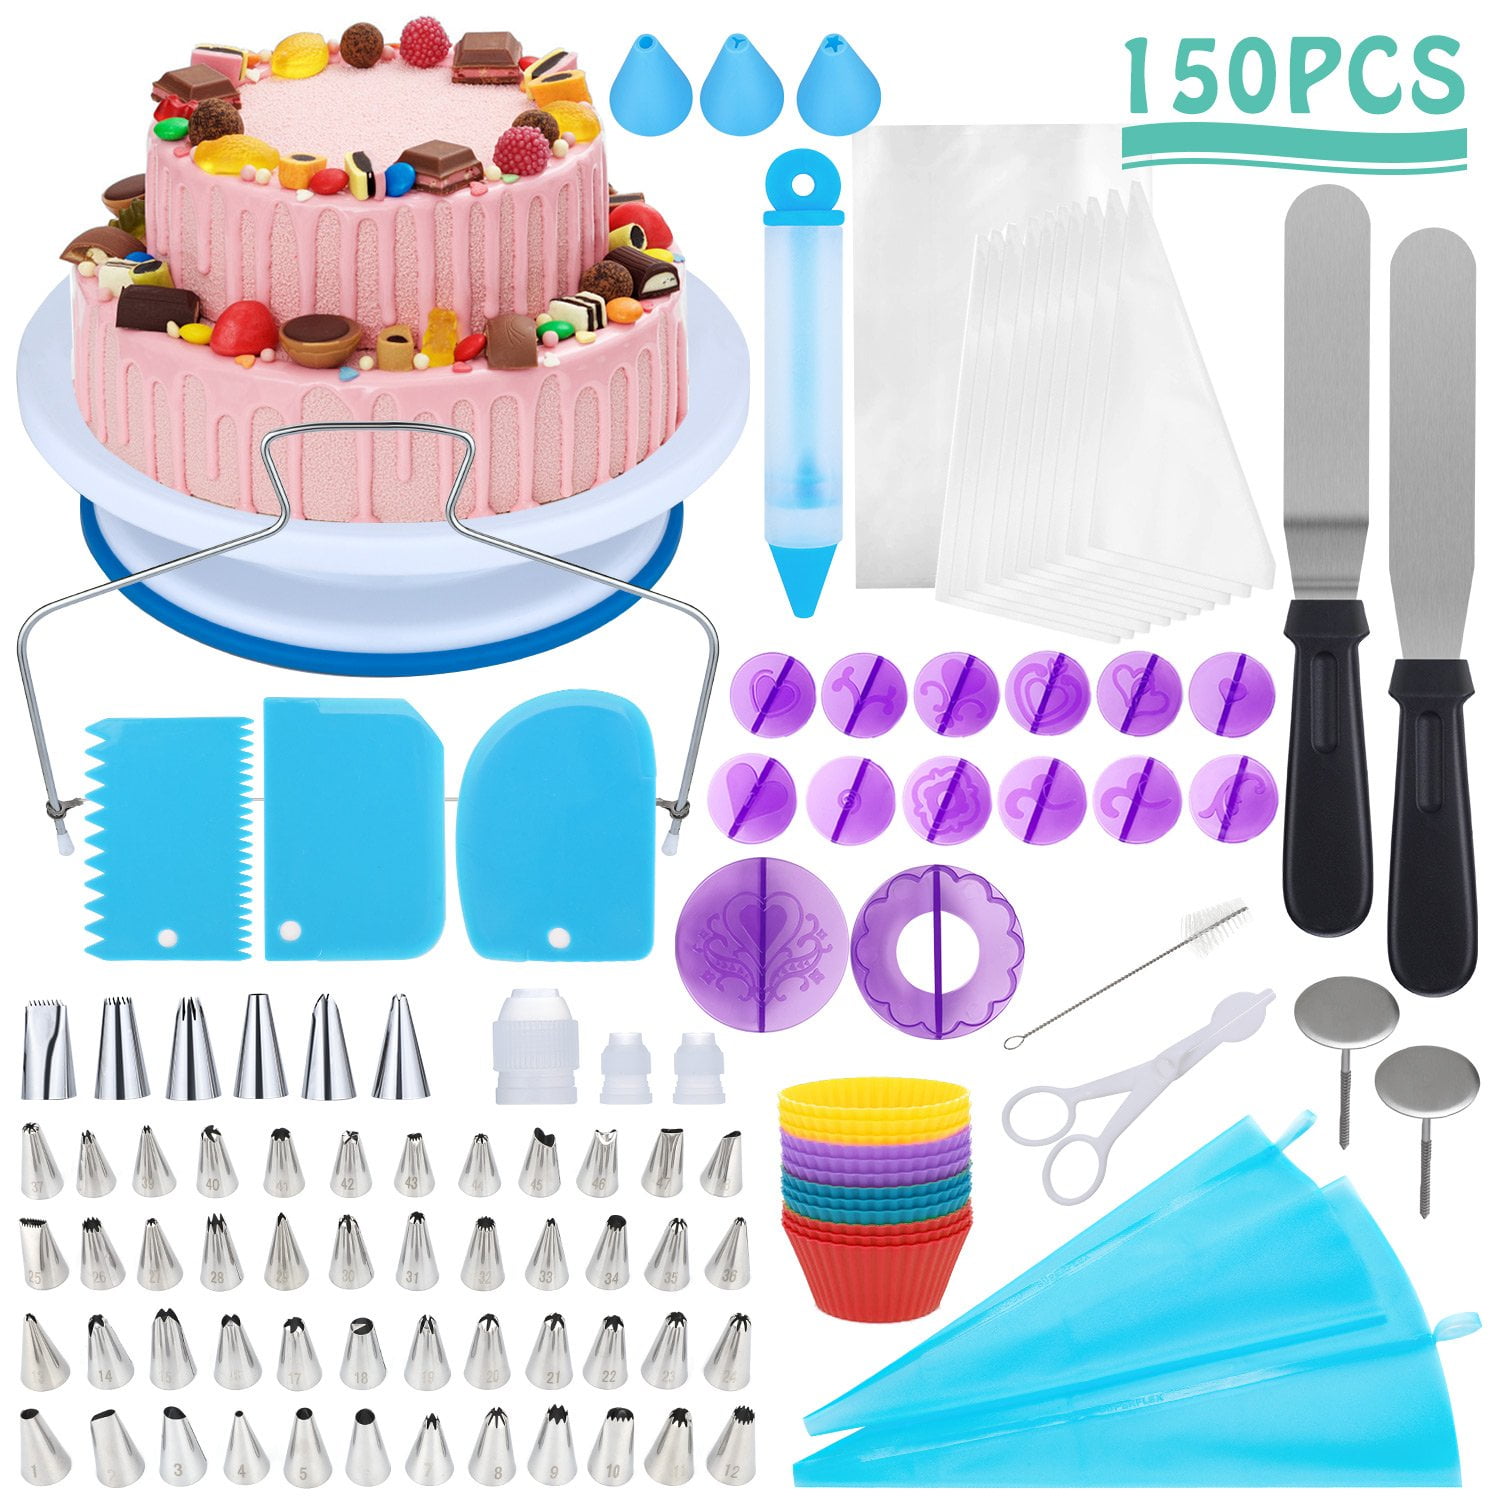 CoPedvic 150pcs Cake Decorating Supplies Set, Cupcake Decorating ...